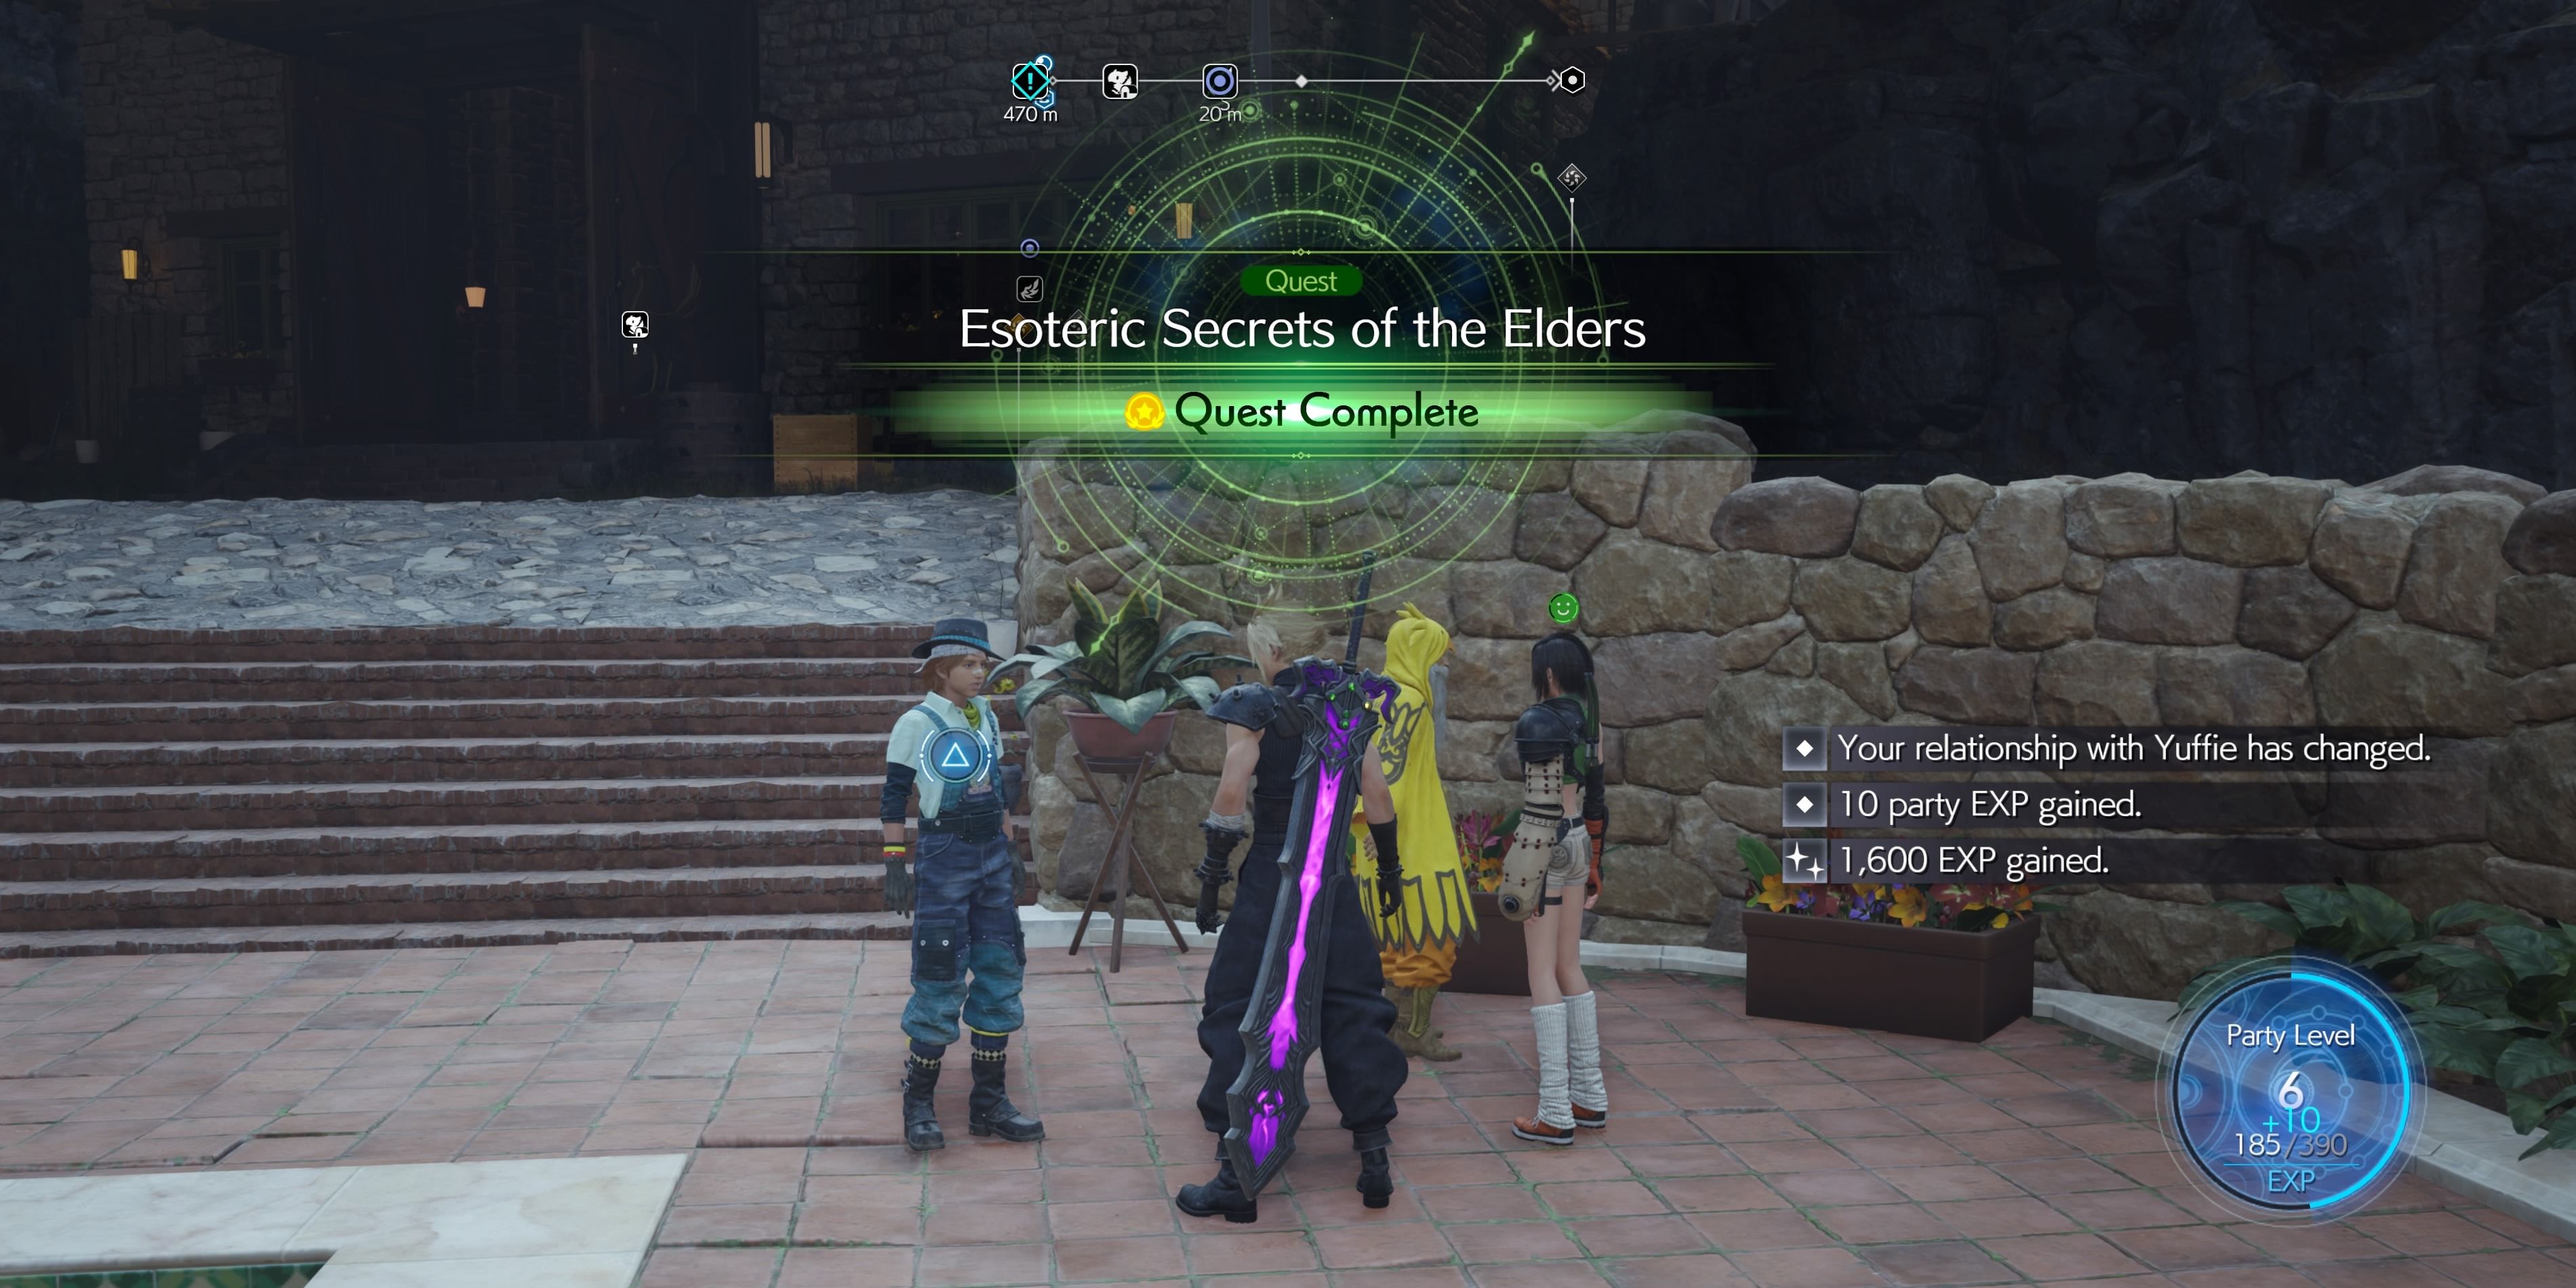 Final Fantasy 7 Rebirth: Esoteric Secrets of the Elders Rewards